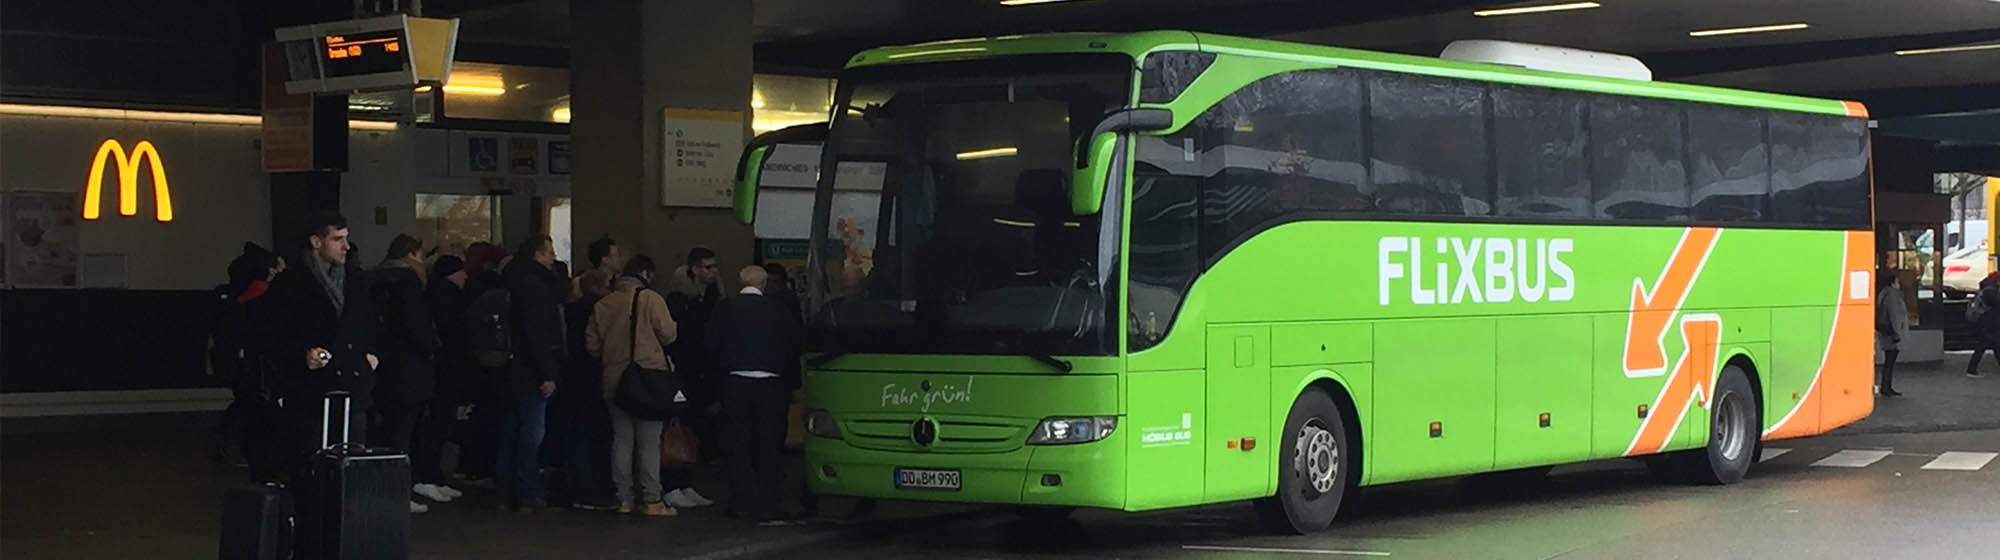 Flixbus wznowiliśmy trasy do Berlina, Warszawy, Gdańska